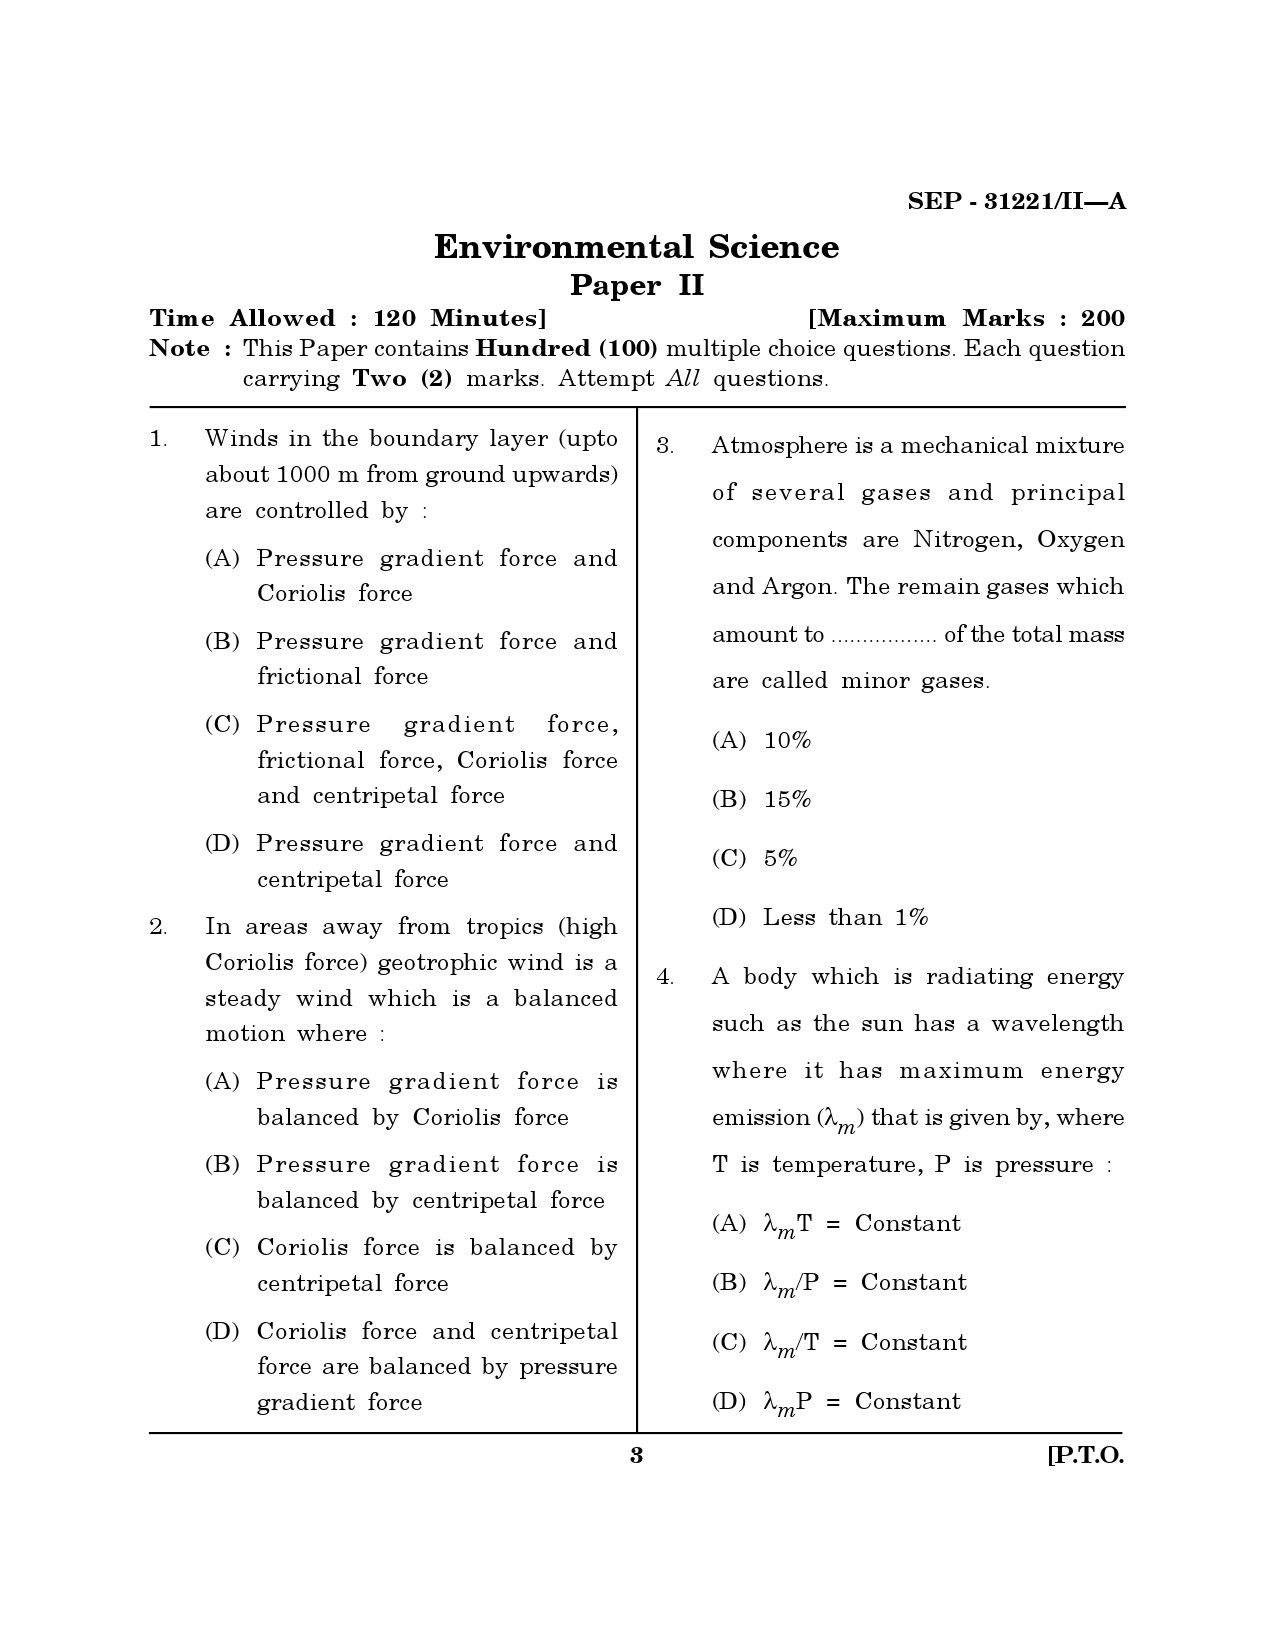 Maharashtra SET Environmental Sciences Exam Question Paper September 2021 2